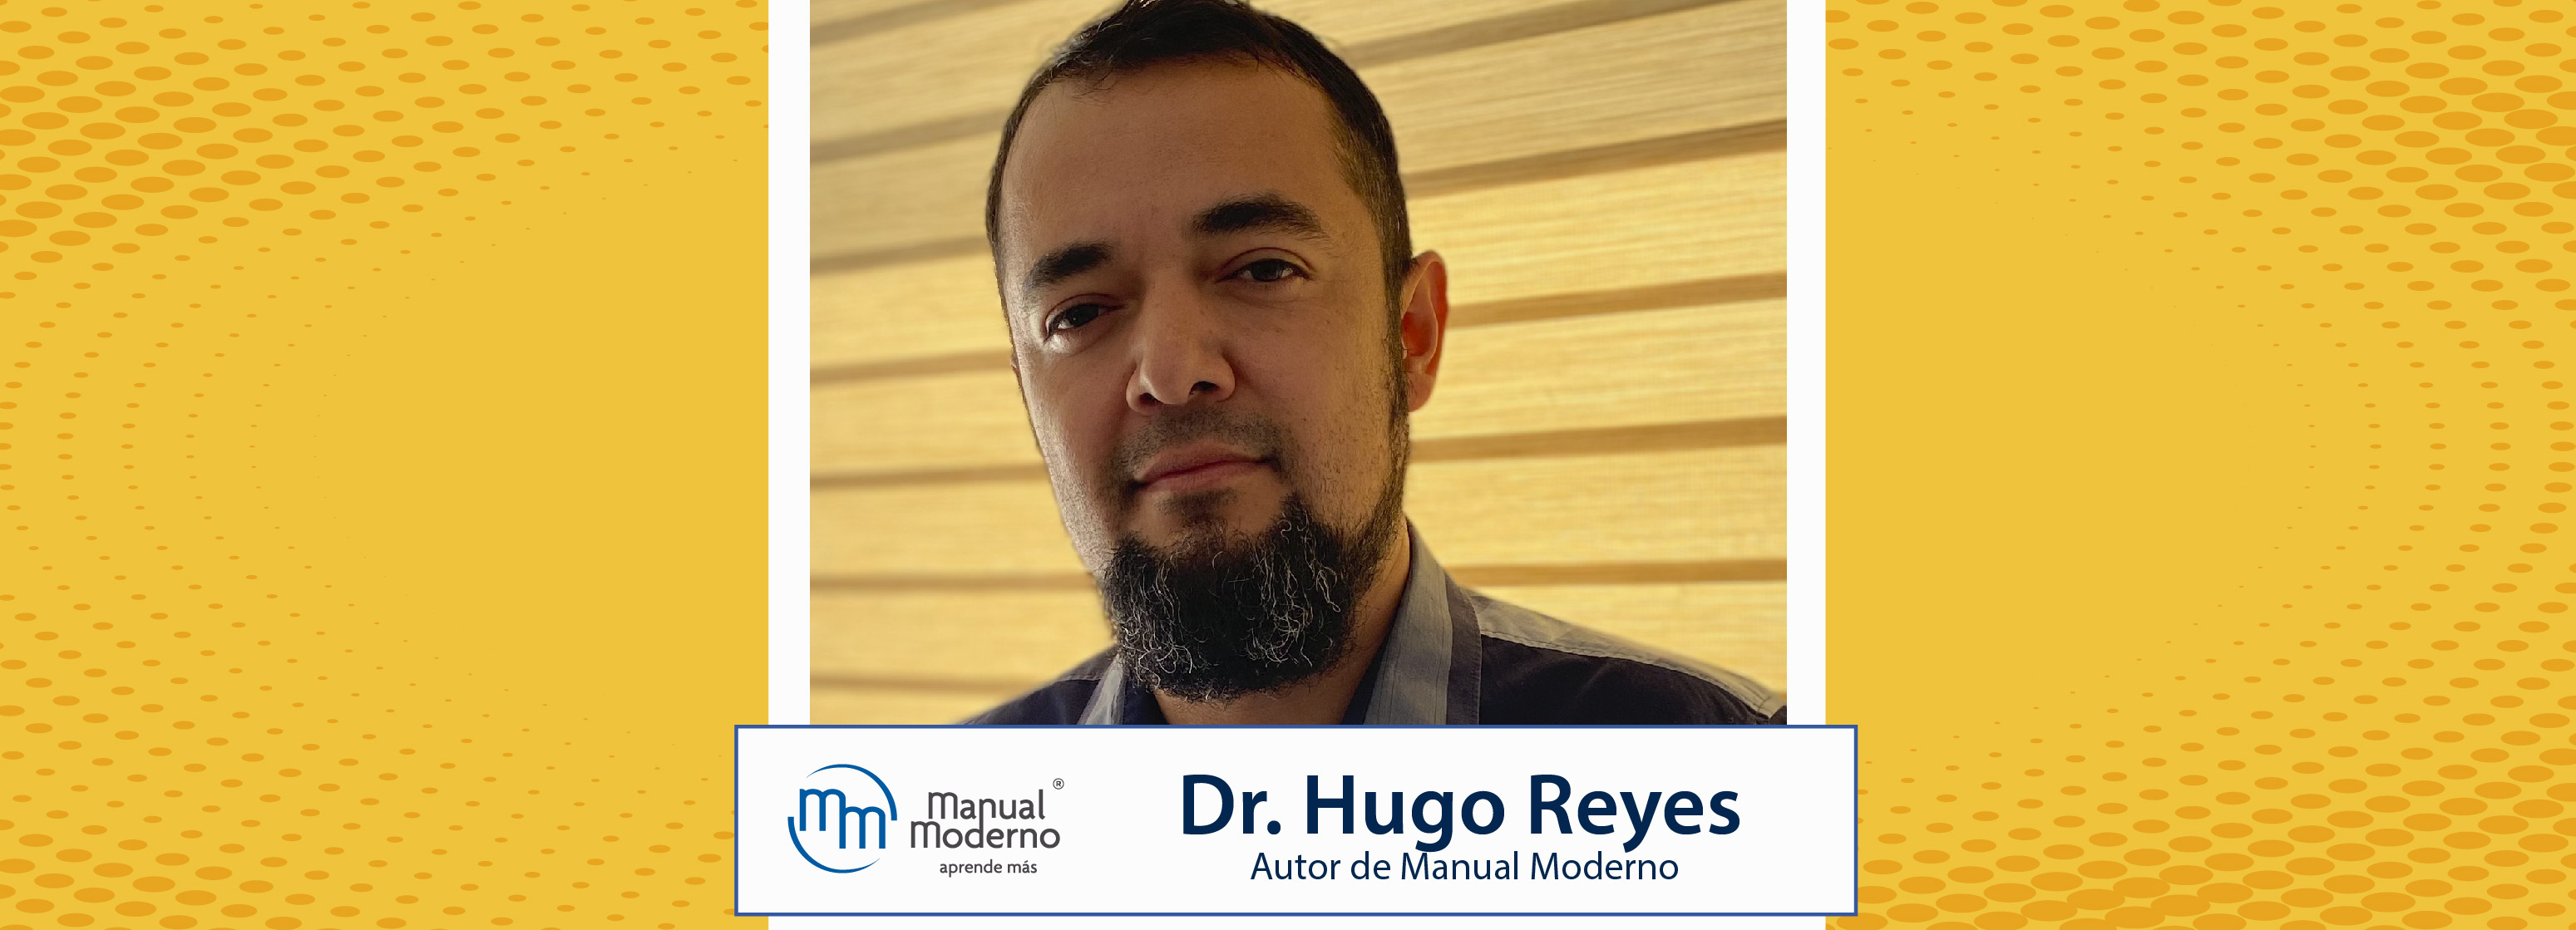 Nuestros Autores. Dr. Hugo Reyes